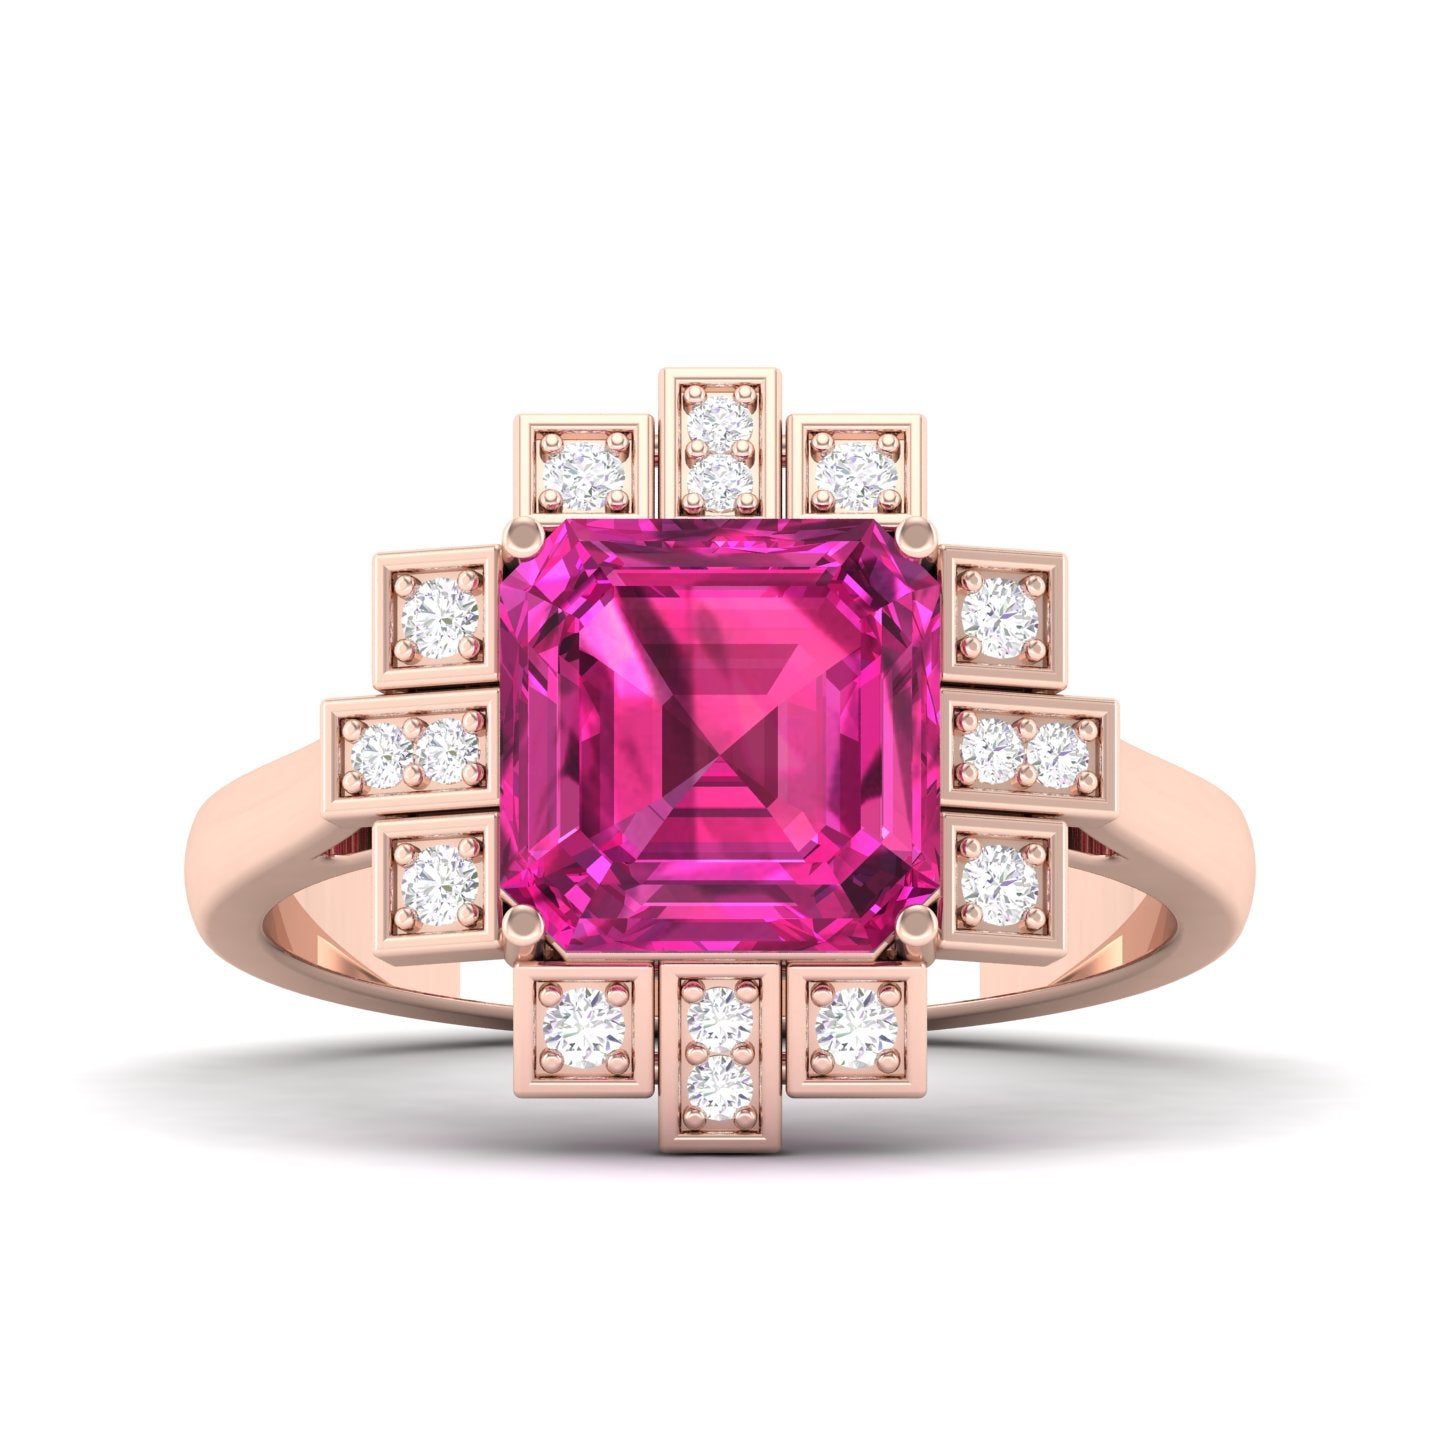 Maurya Asscher Cut Garnet Solitaire Firecracker Engagement Ring with Diamonds